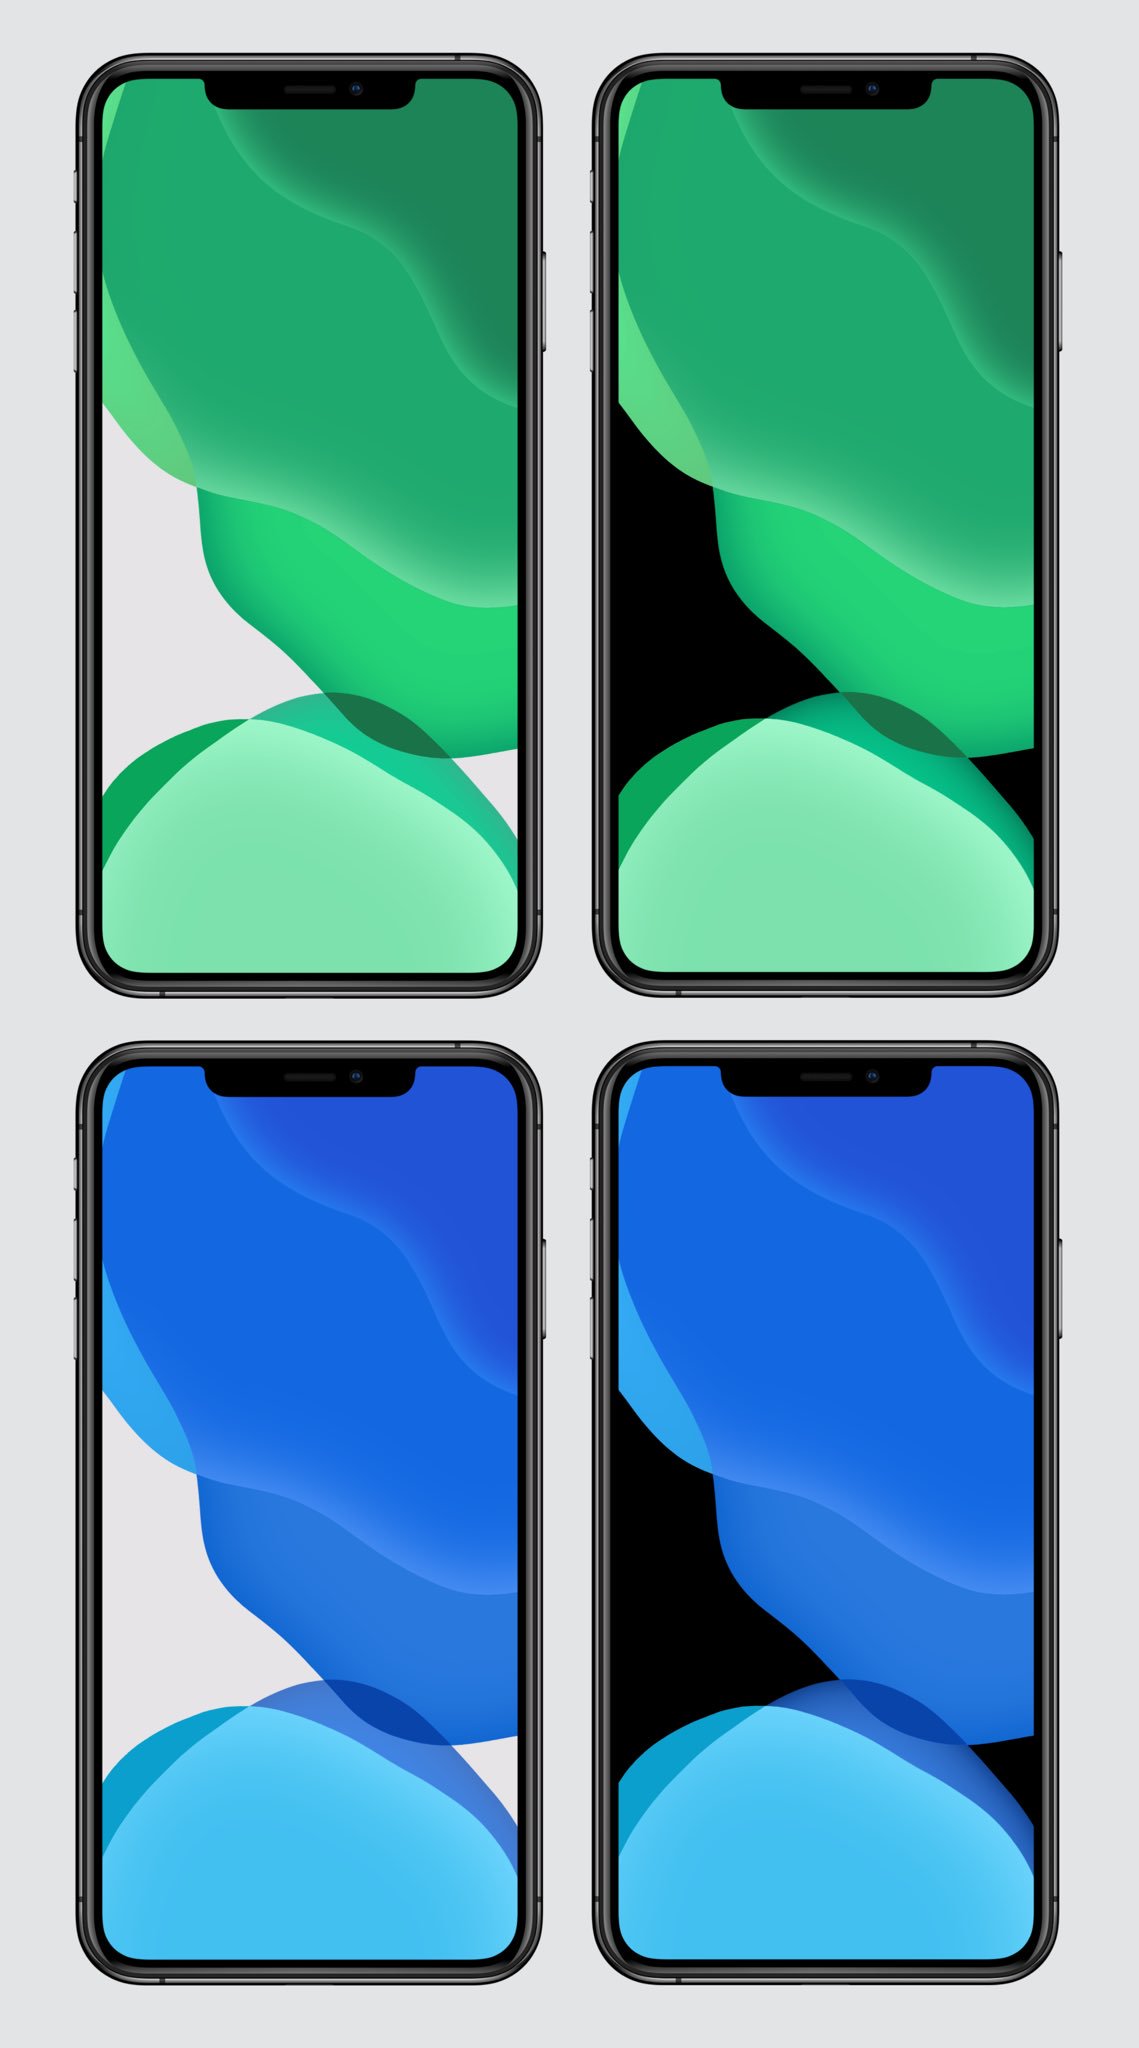 Hình nền iOS 13 màu xanh và xanh lá cây này đem lại cho người dùng một trải nghiệm thú vị trên màn hình điện thoại của bạn! Thiết kế độc đáo và đầy màu sắc của nó có thể giữ cho người dùng được tươi mới và sáng tạo trong công việc và cuộc sống của mình. Hãy khám phá ngay để cập nhật thêm nhiều hình nền đẹp cho iPhone của bạn!